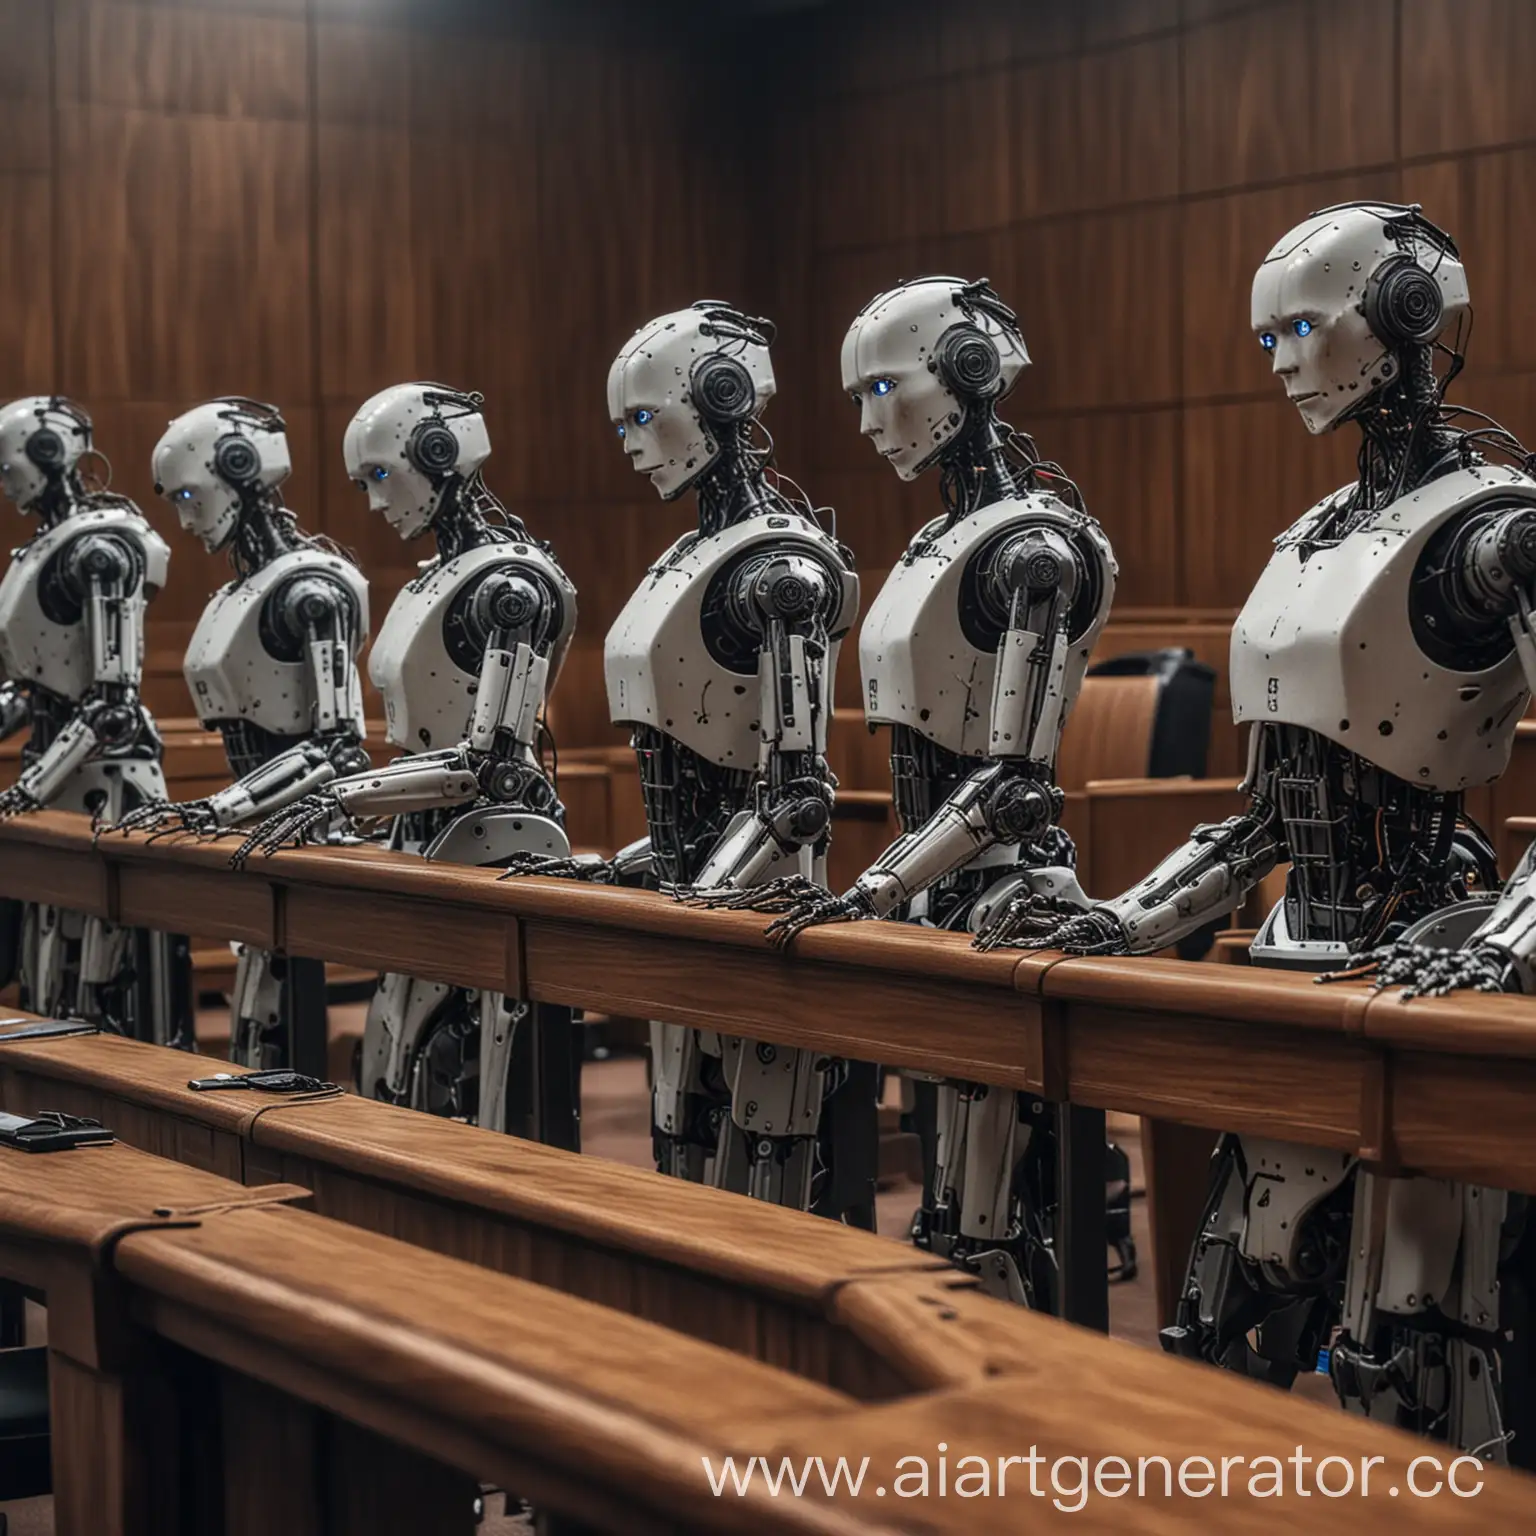 суд присяжных с роботами
